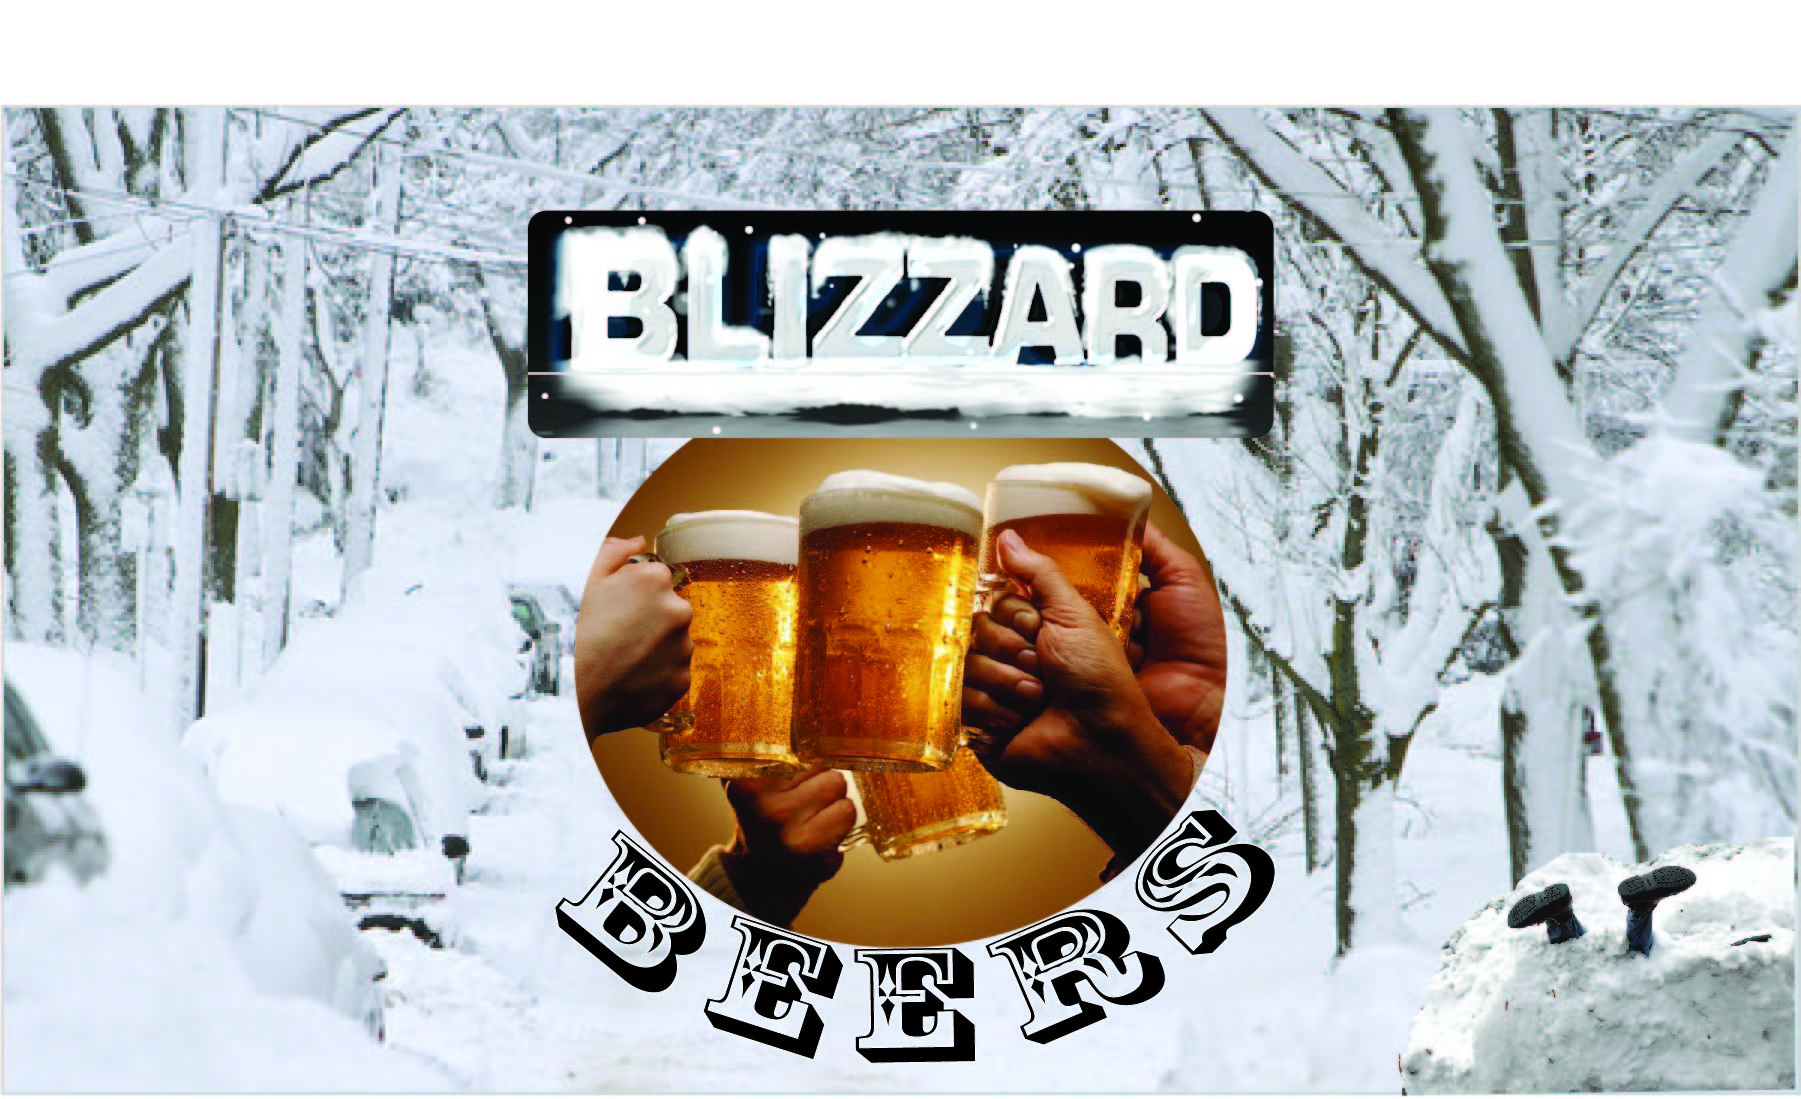 blizzard beers.jpg